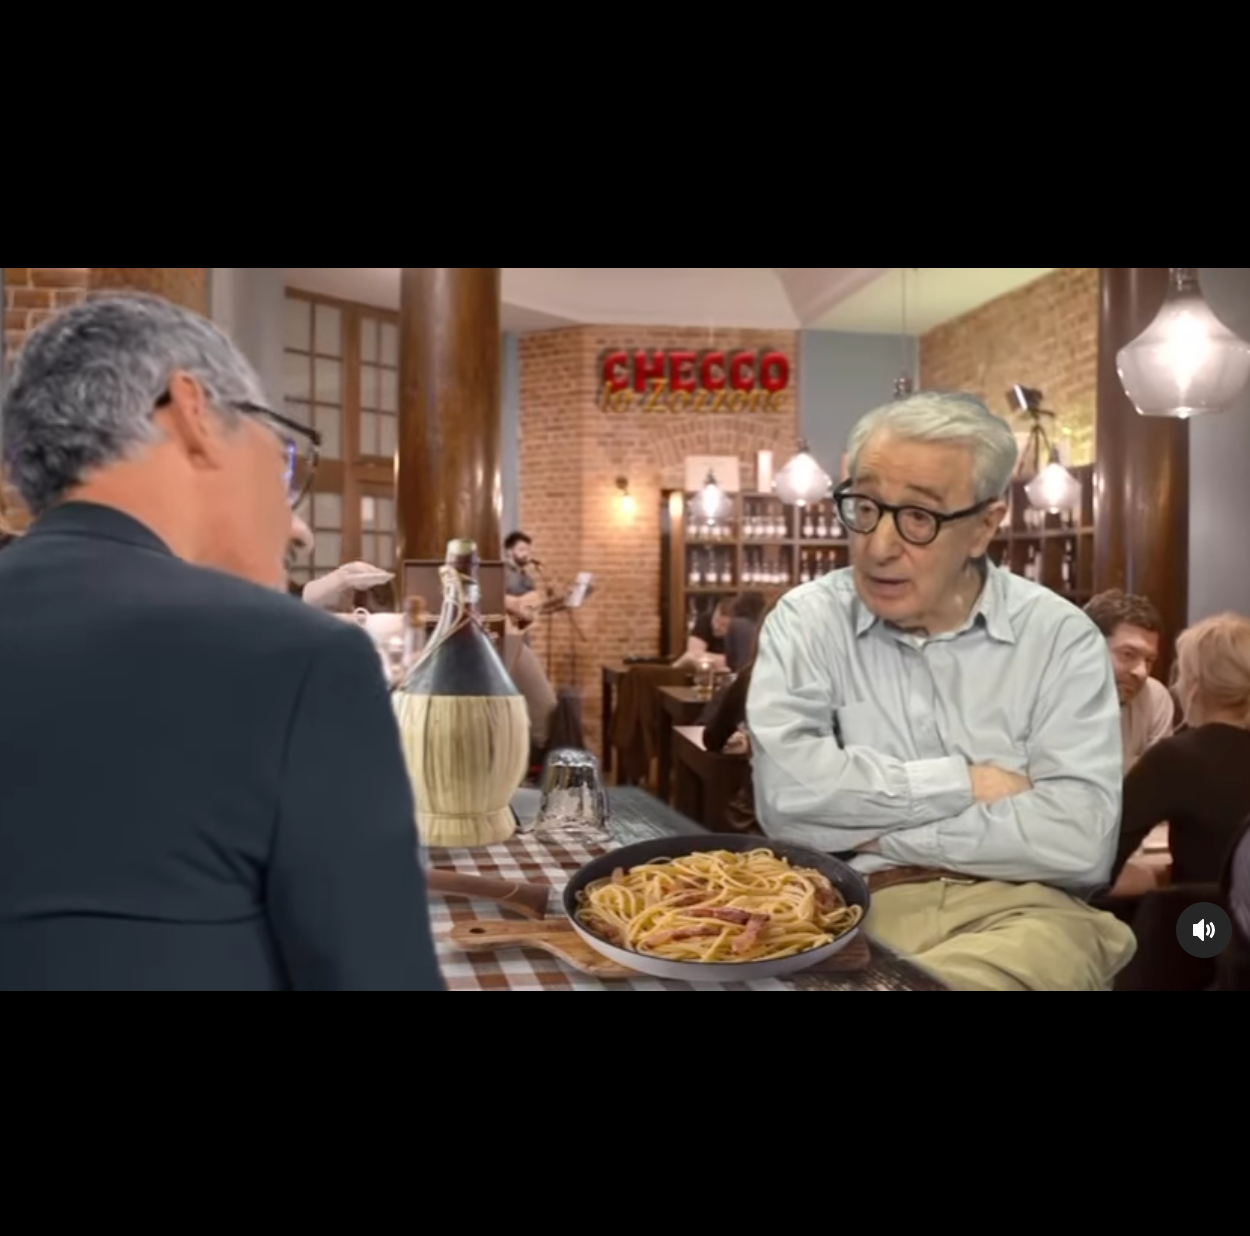 La finta intervista a Woody Allen sugli spaghetti di “Checco lo zozzone” .